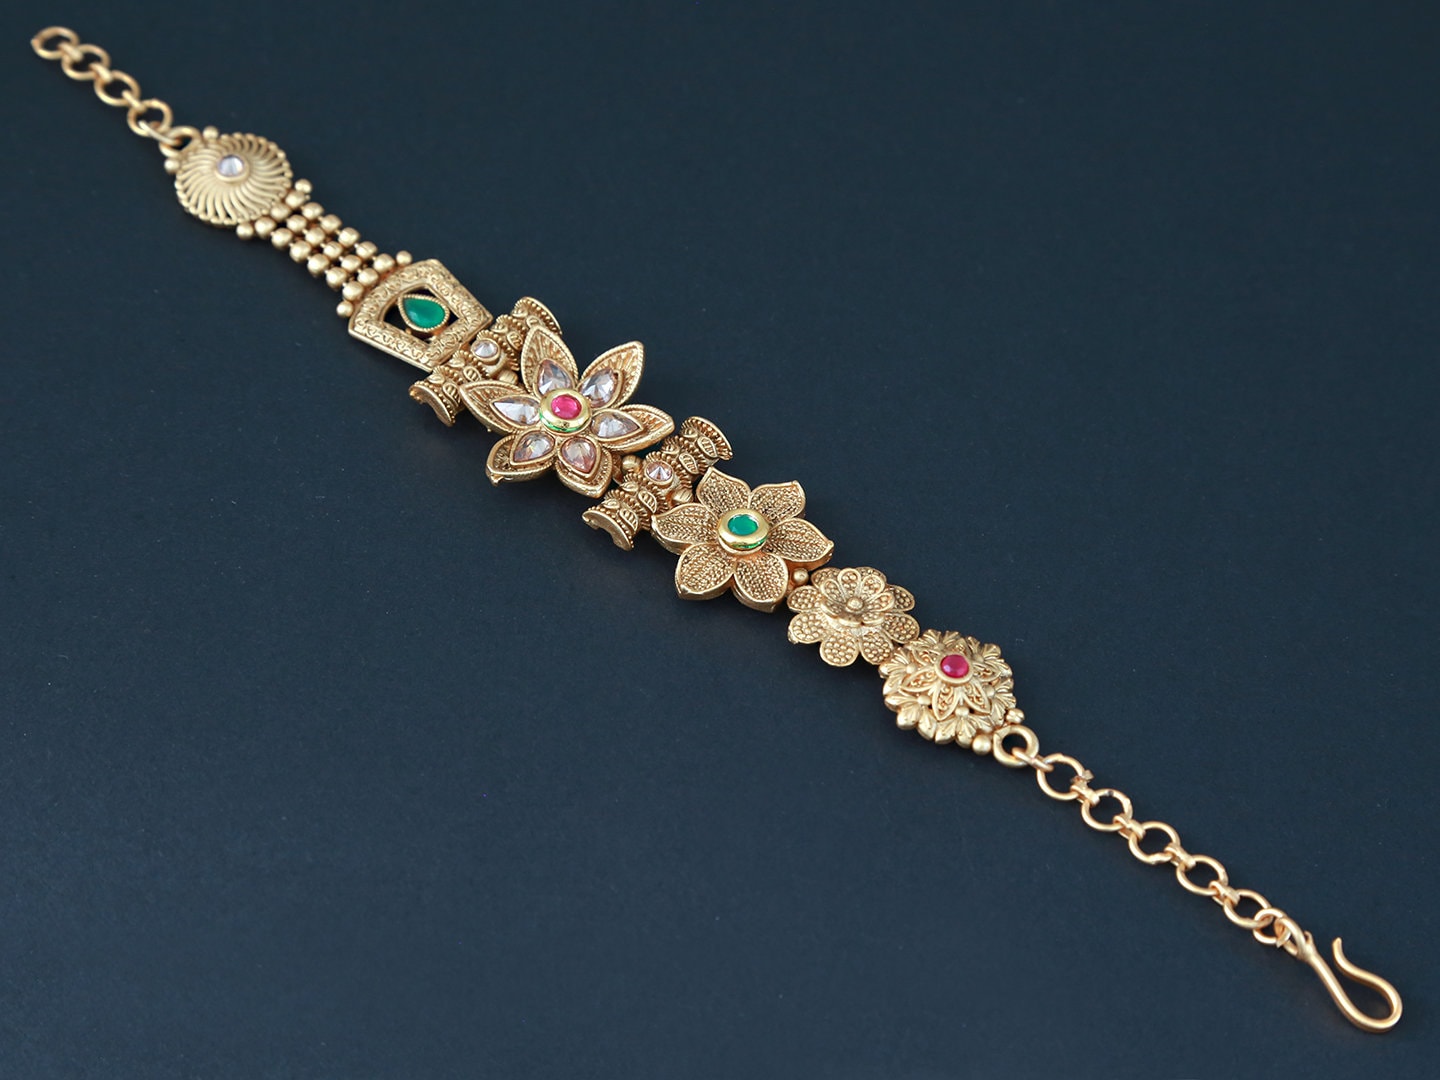 Indian bracelets Gold | bracelets for women |latest Gold bracelet designs | women's bracelets antique gold | gold plated adjustable bracelet